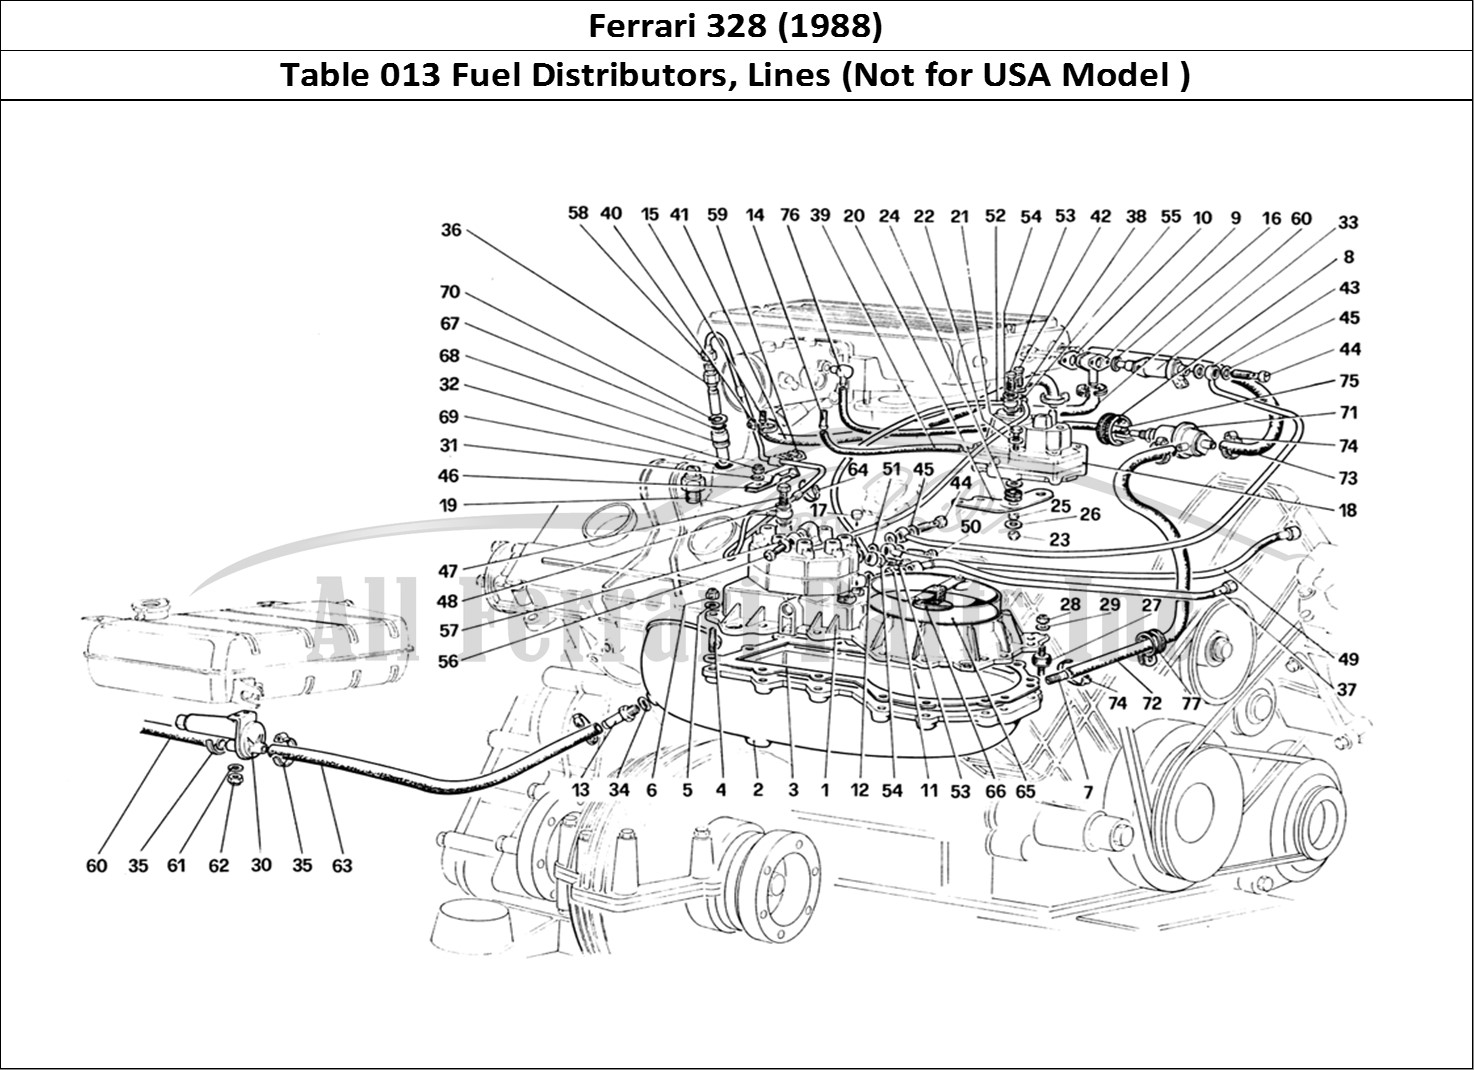 Ferrari Parts Ferrari 328 (1988) Page 013 Fuel Distributors Lines (